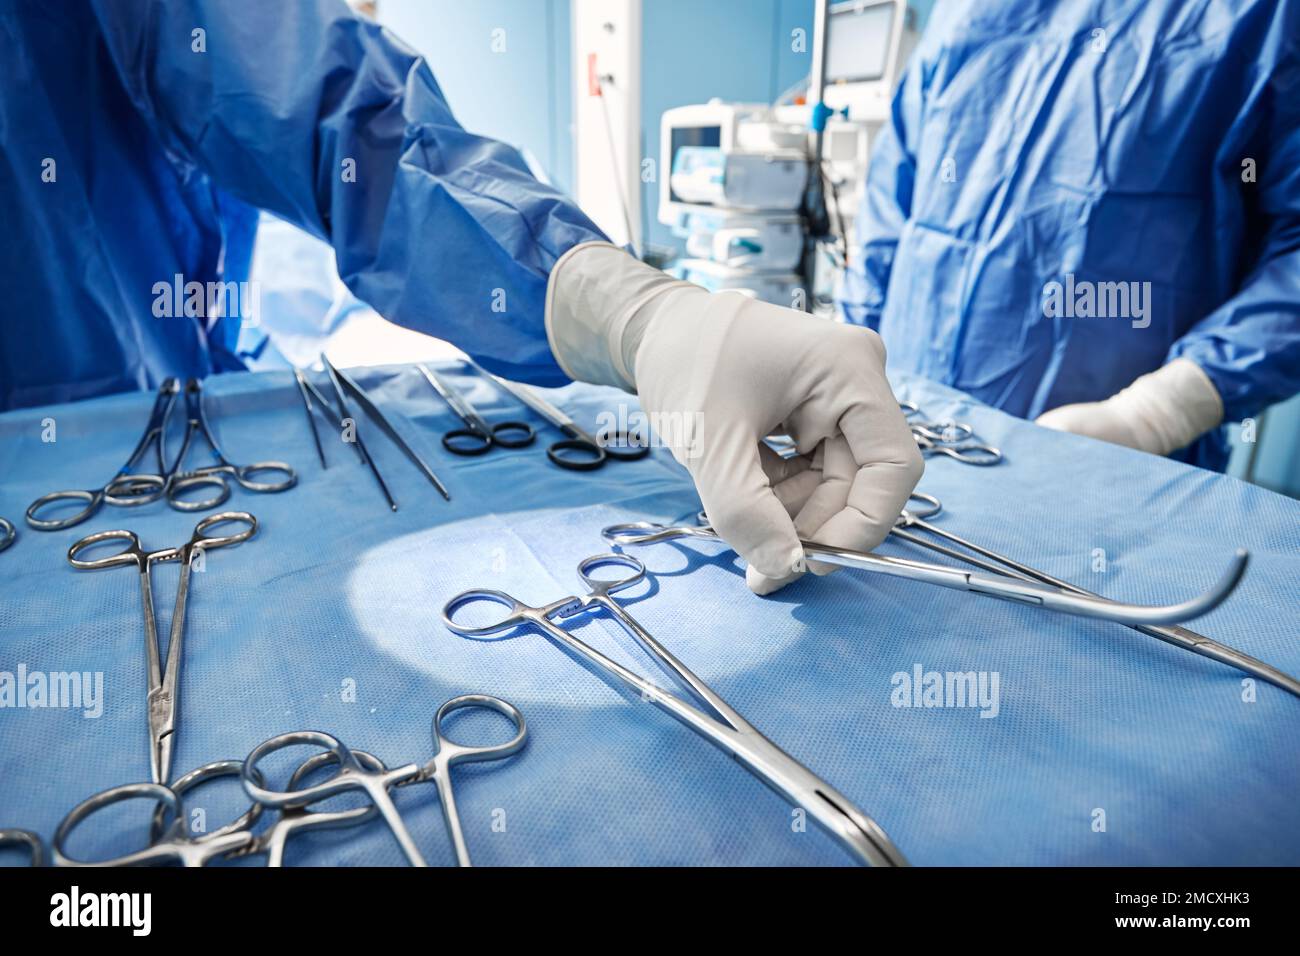 Primo piano degli strumenti chirurgici sterilizzati e pronti all'uso sul vassoio medico durante l'intervento chirurgico in sala operatoria presso l'ospedale Foto Stock